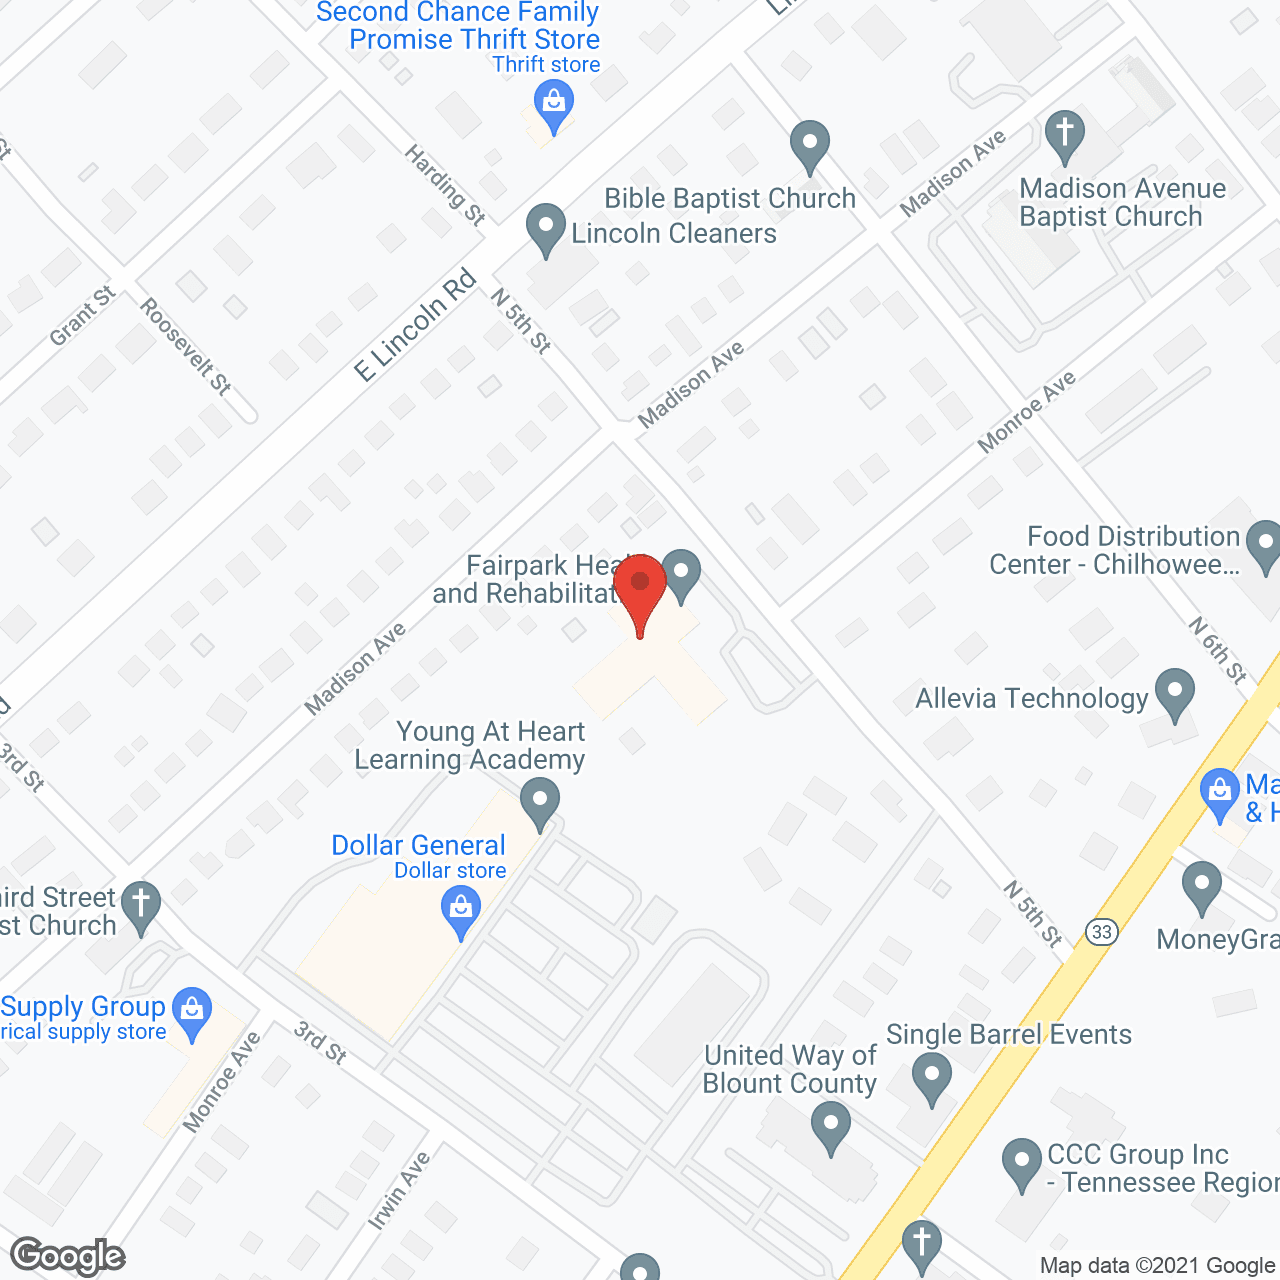 Fairpark Healthcare Center in google map